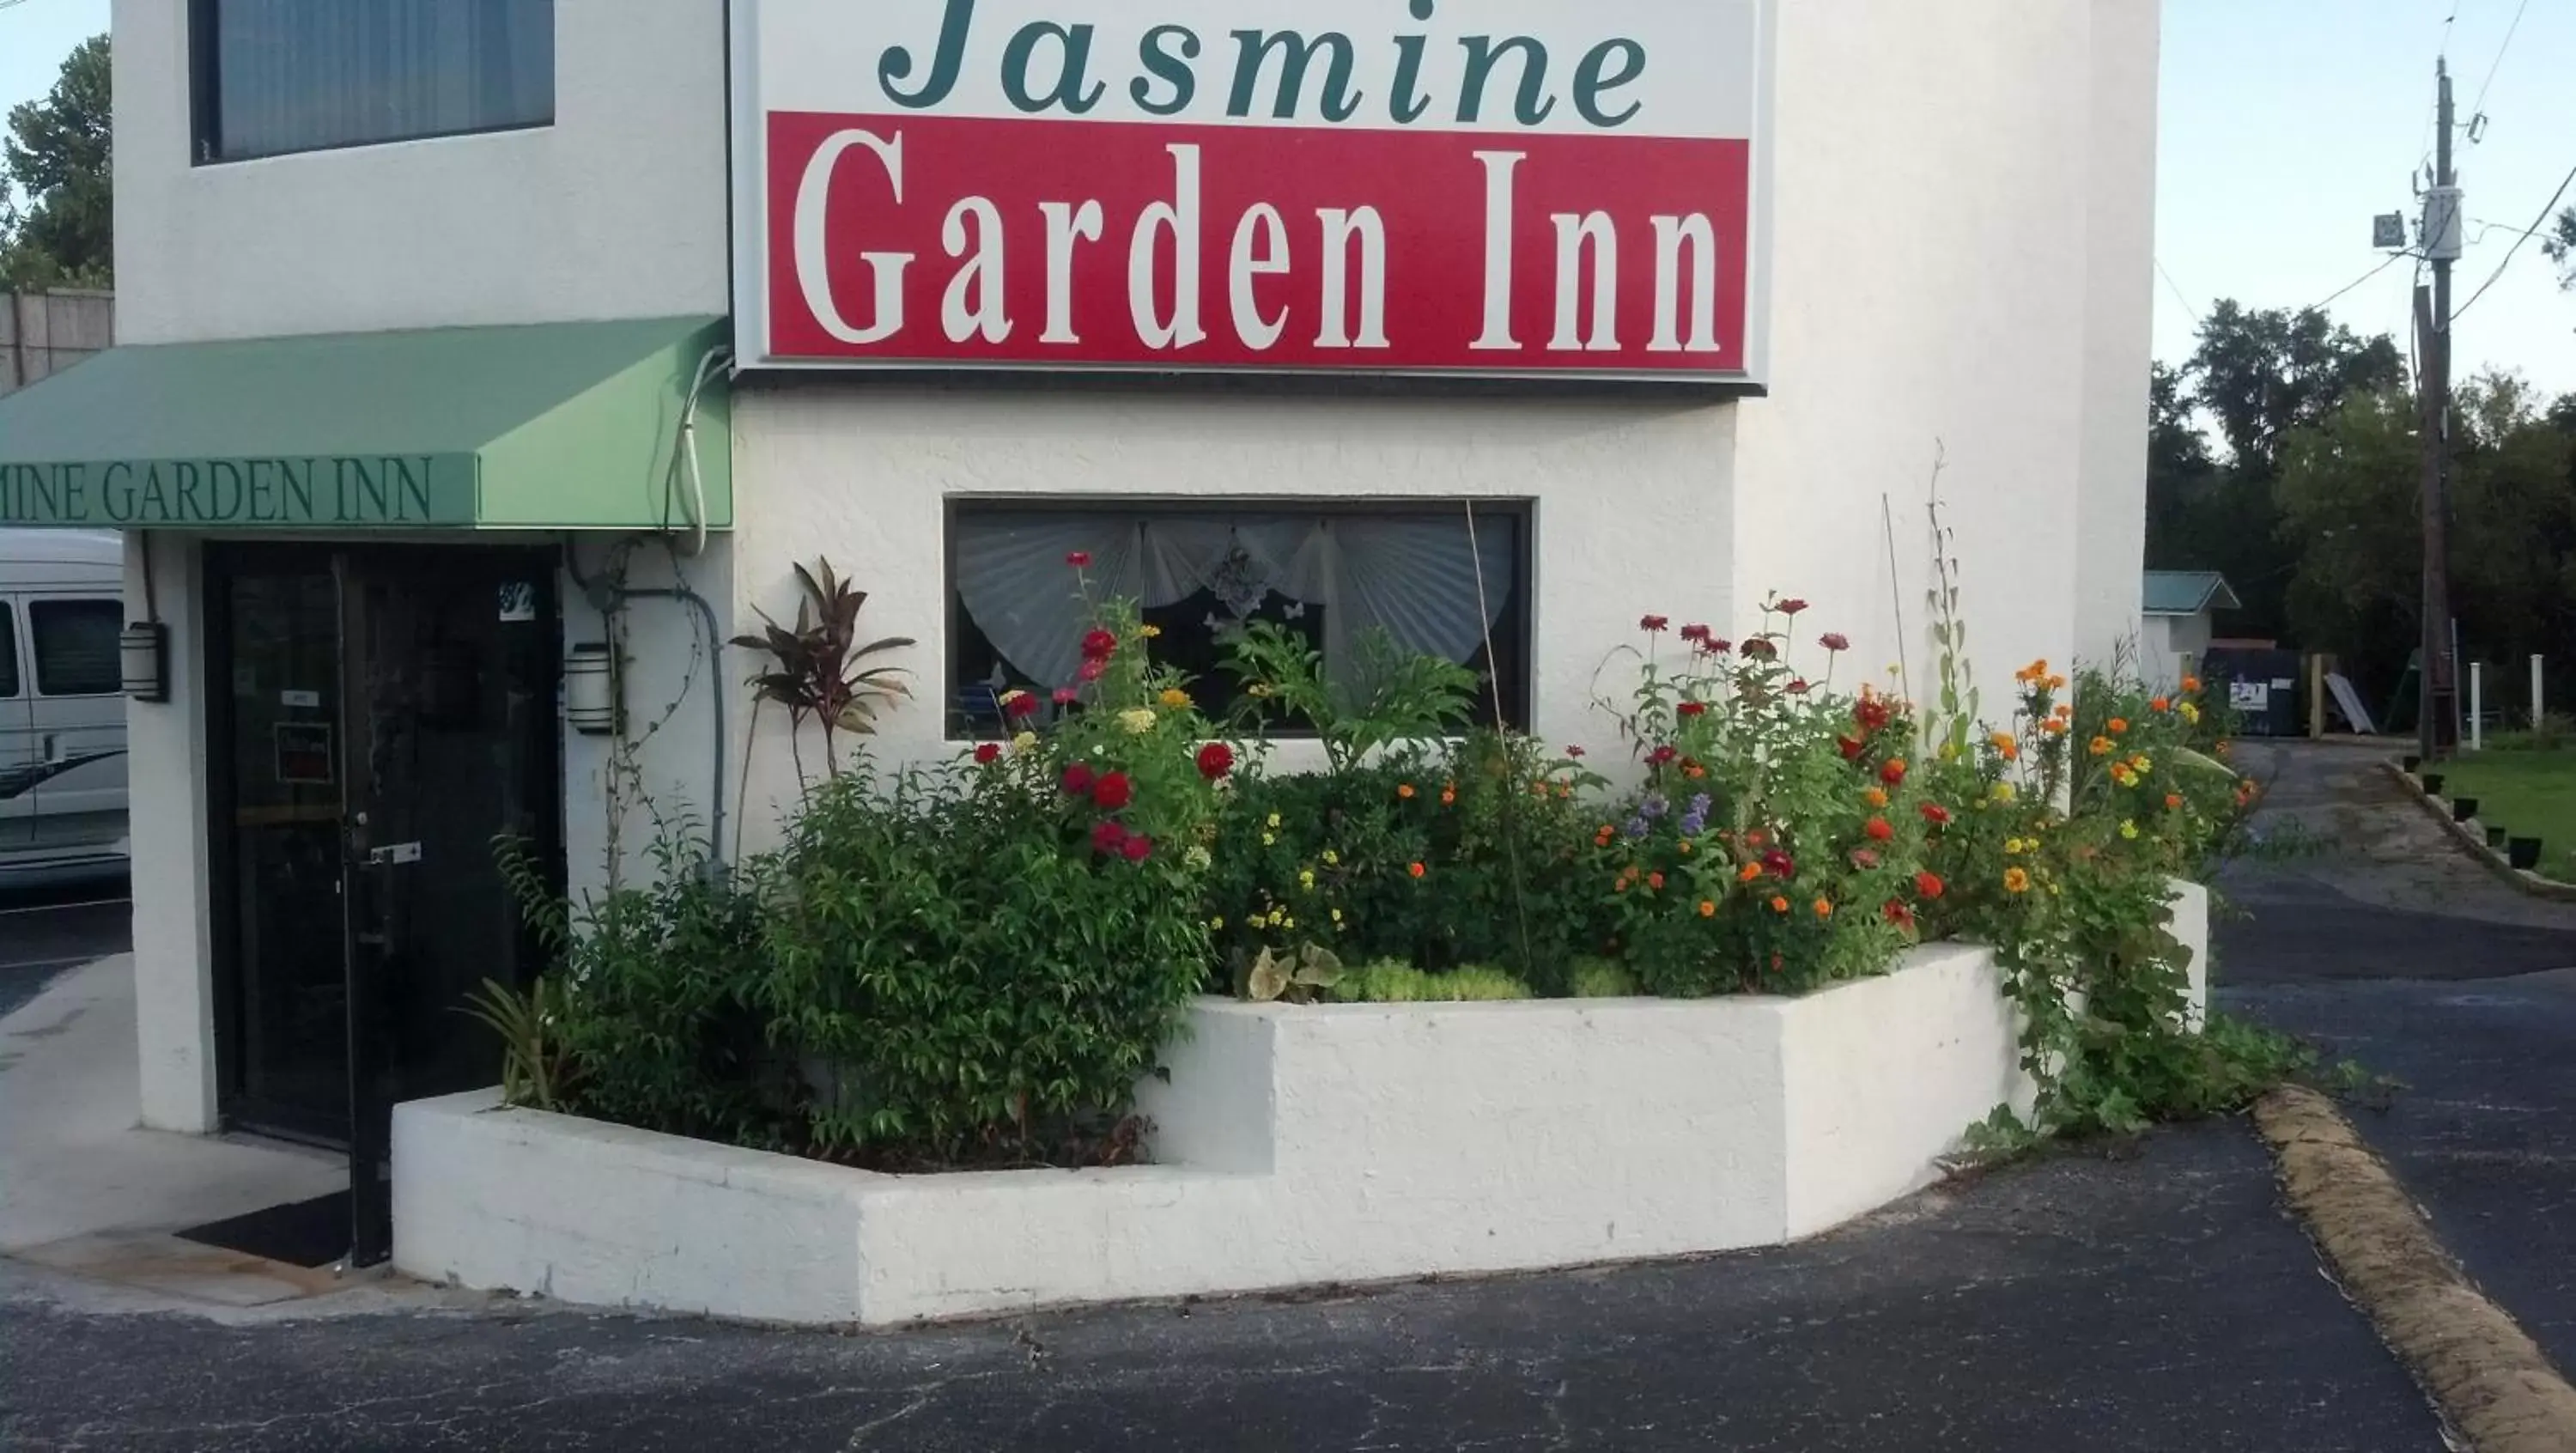 Garden in Jasmine Garden Inn - Lake City